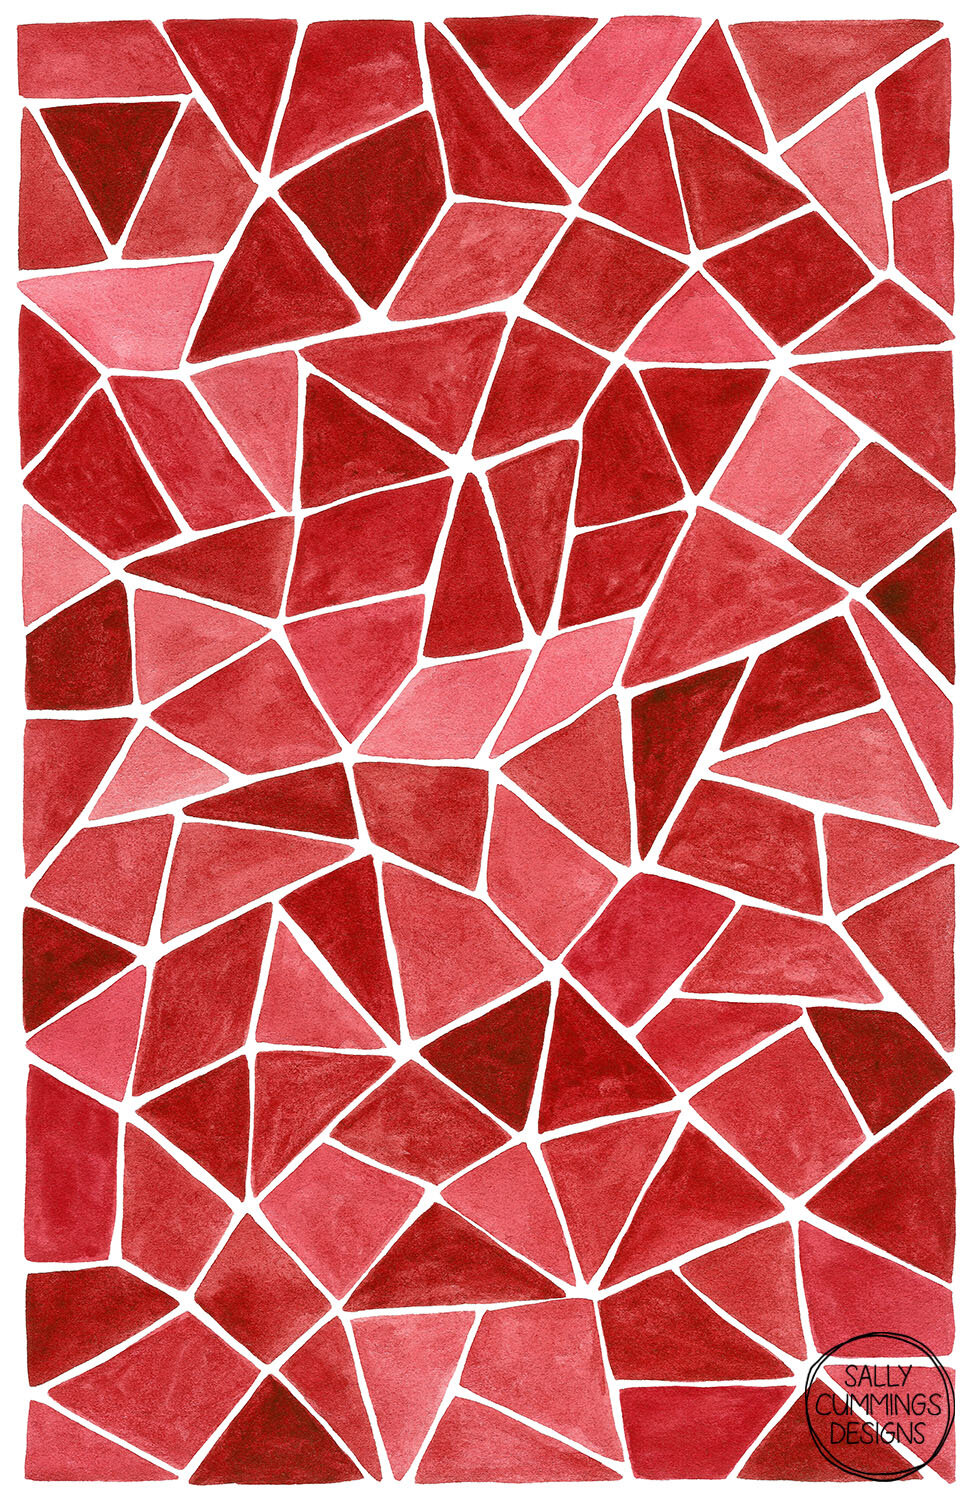 Sally Cummings Designs - Red Rubies